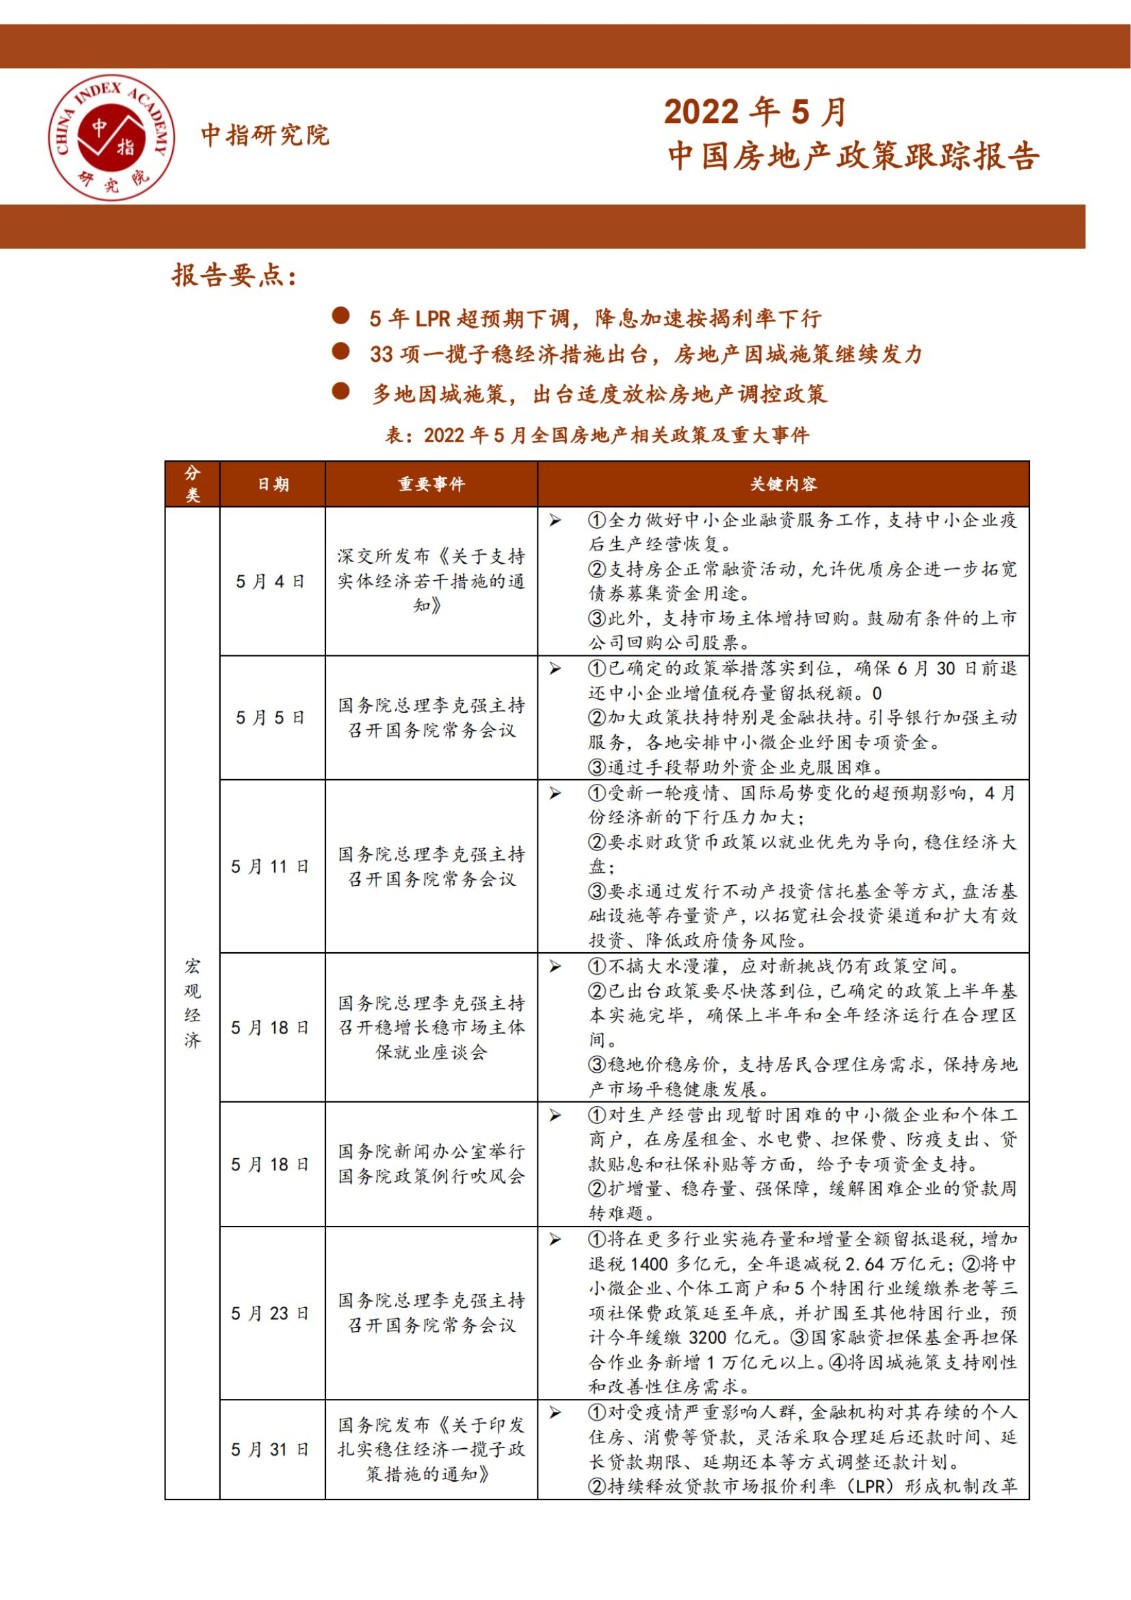 《中指丨中国房地产政策跟踪报告（2022年5月）》_纯图版_00.jpg